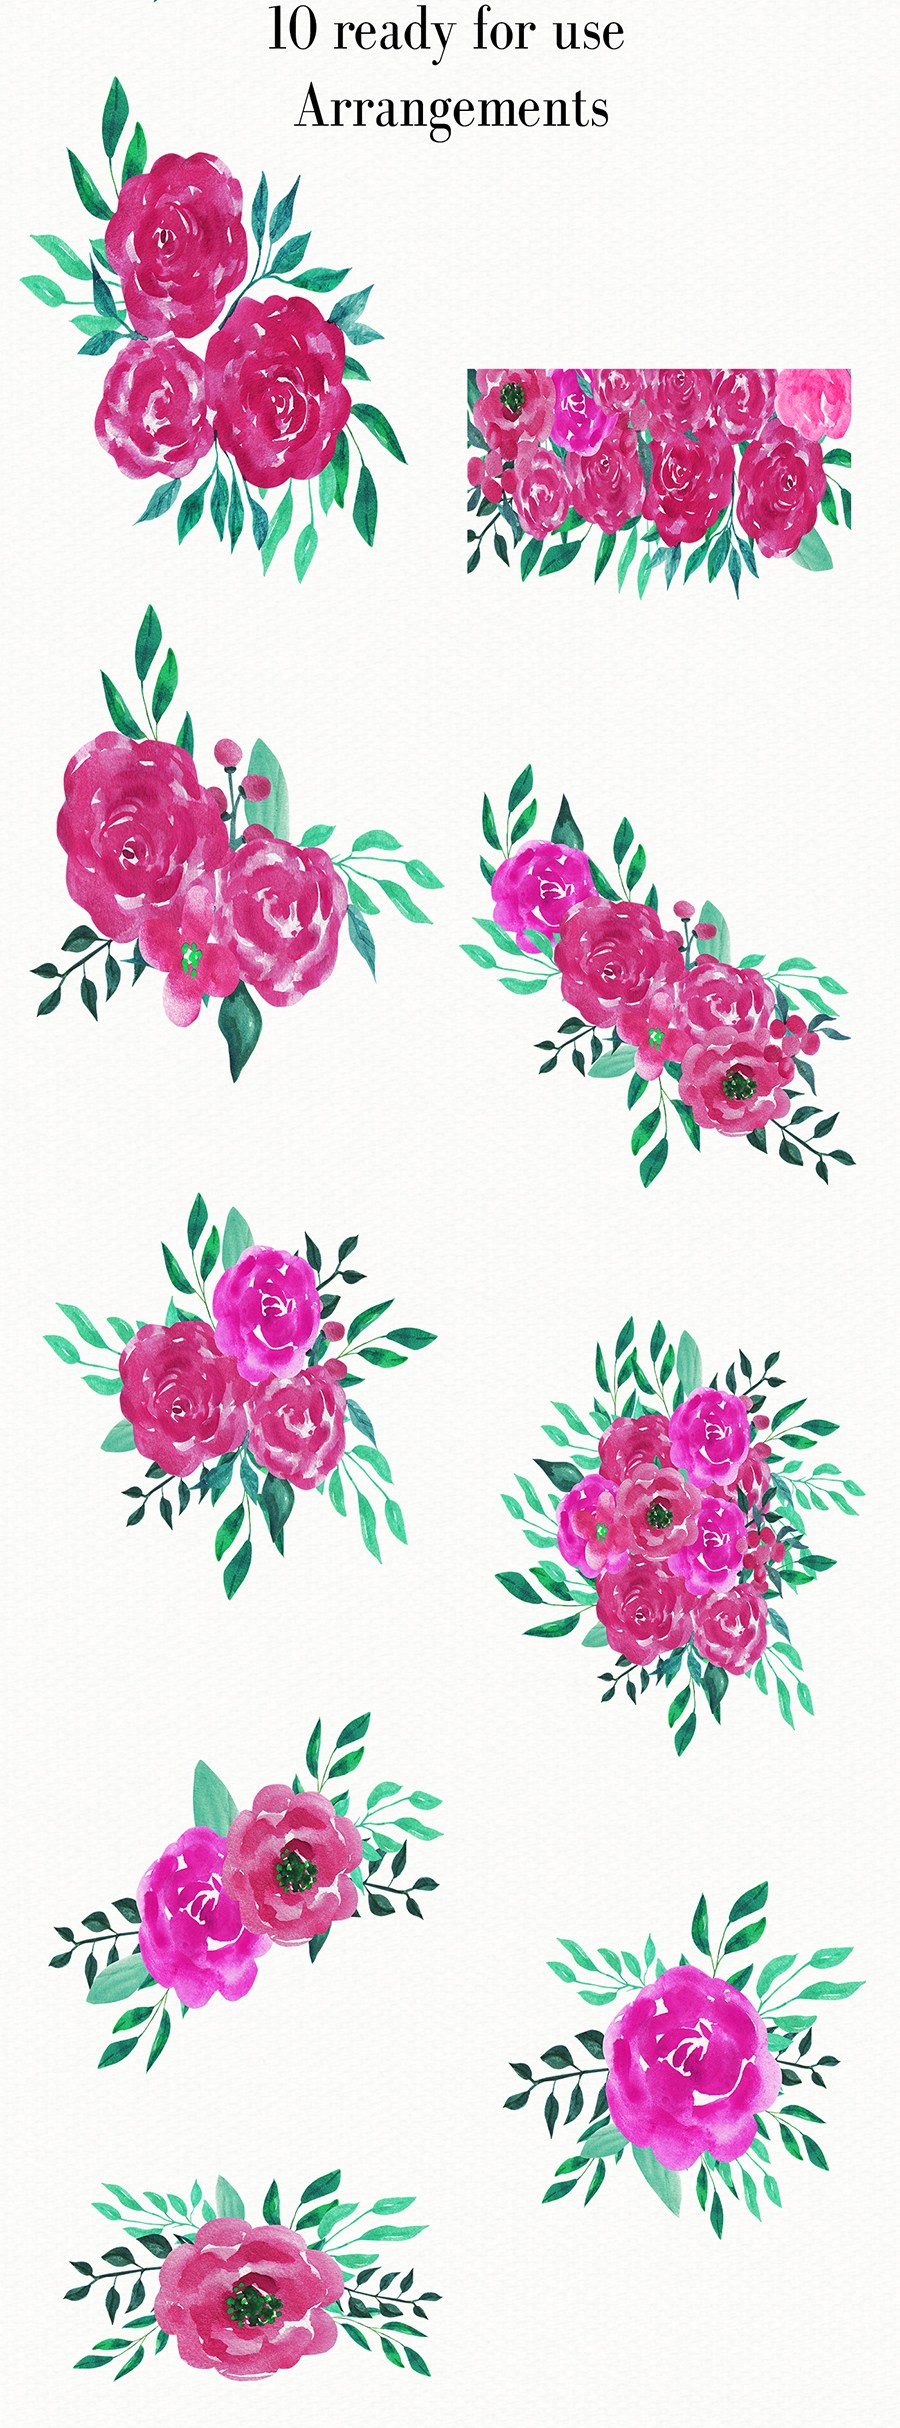 14款高分辨率手绘粉红玫瑰剪贴画套装 14 Pink Roses Cliparts插图2